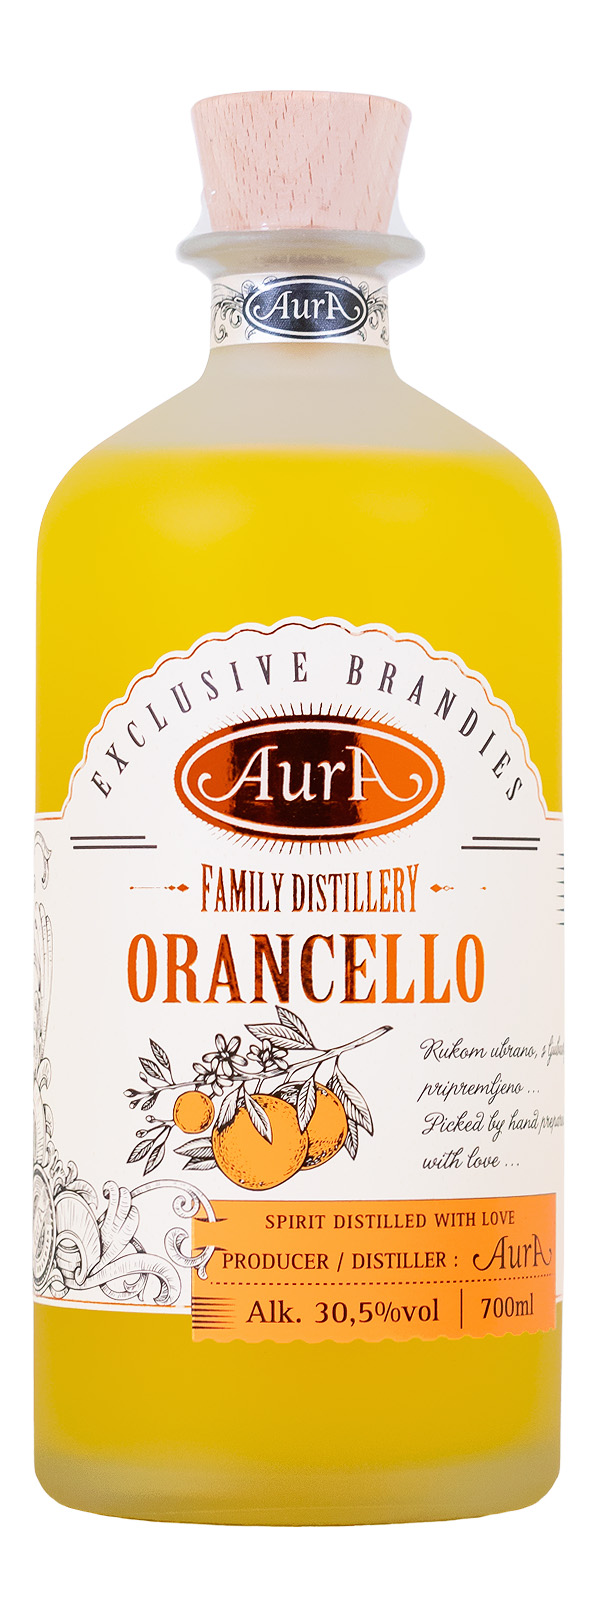 Aura Orancello - 0,7L 30,5% vol